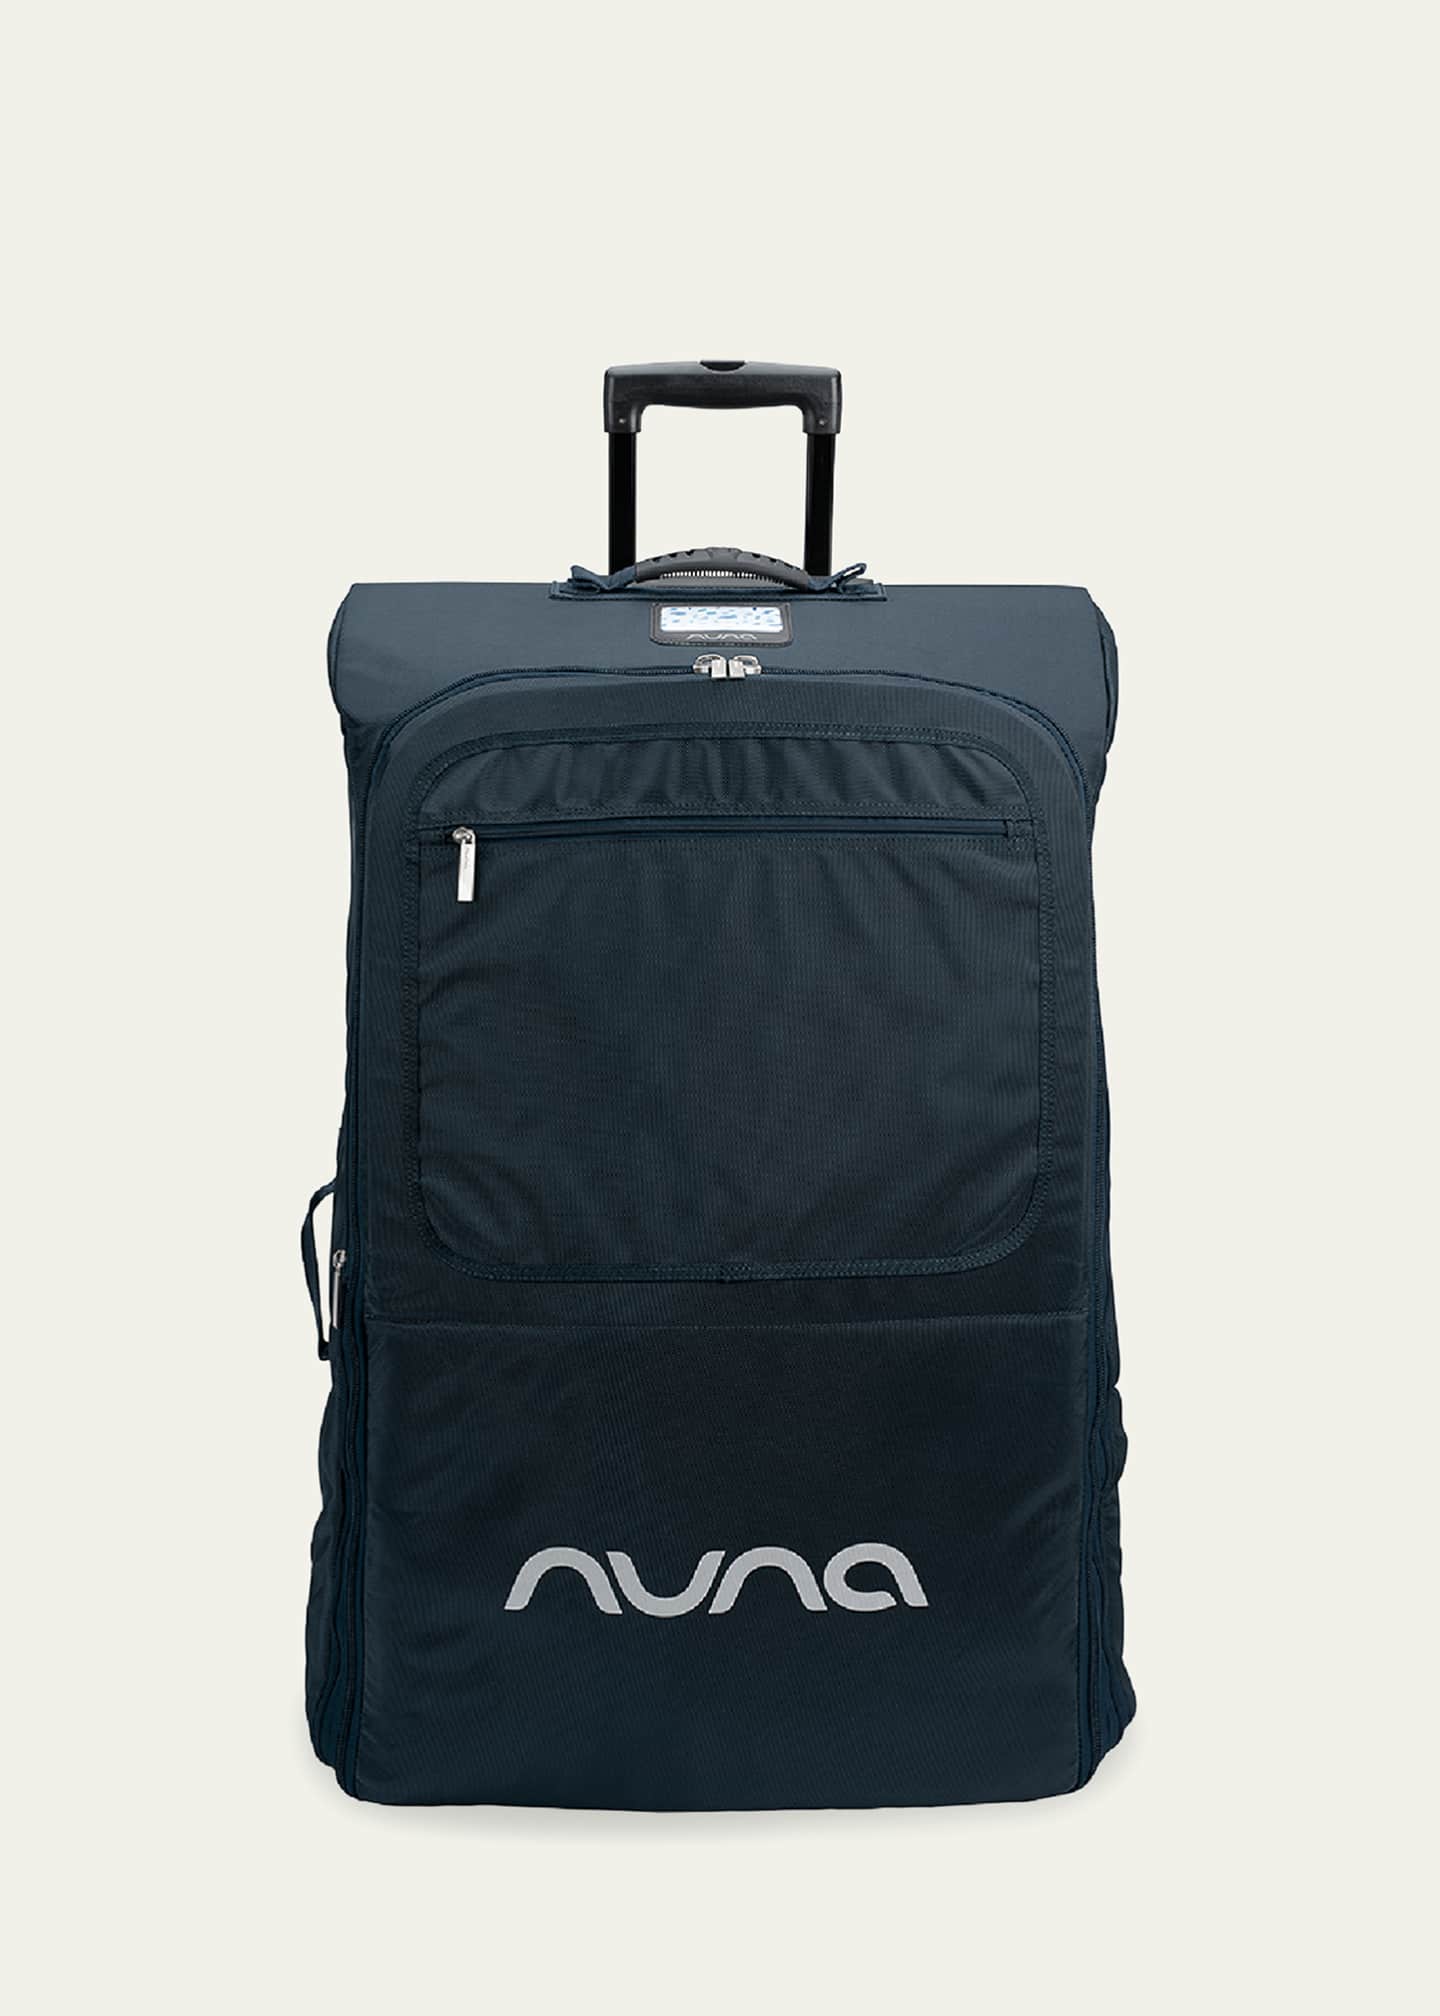 nuna wheeled travel bag uk